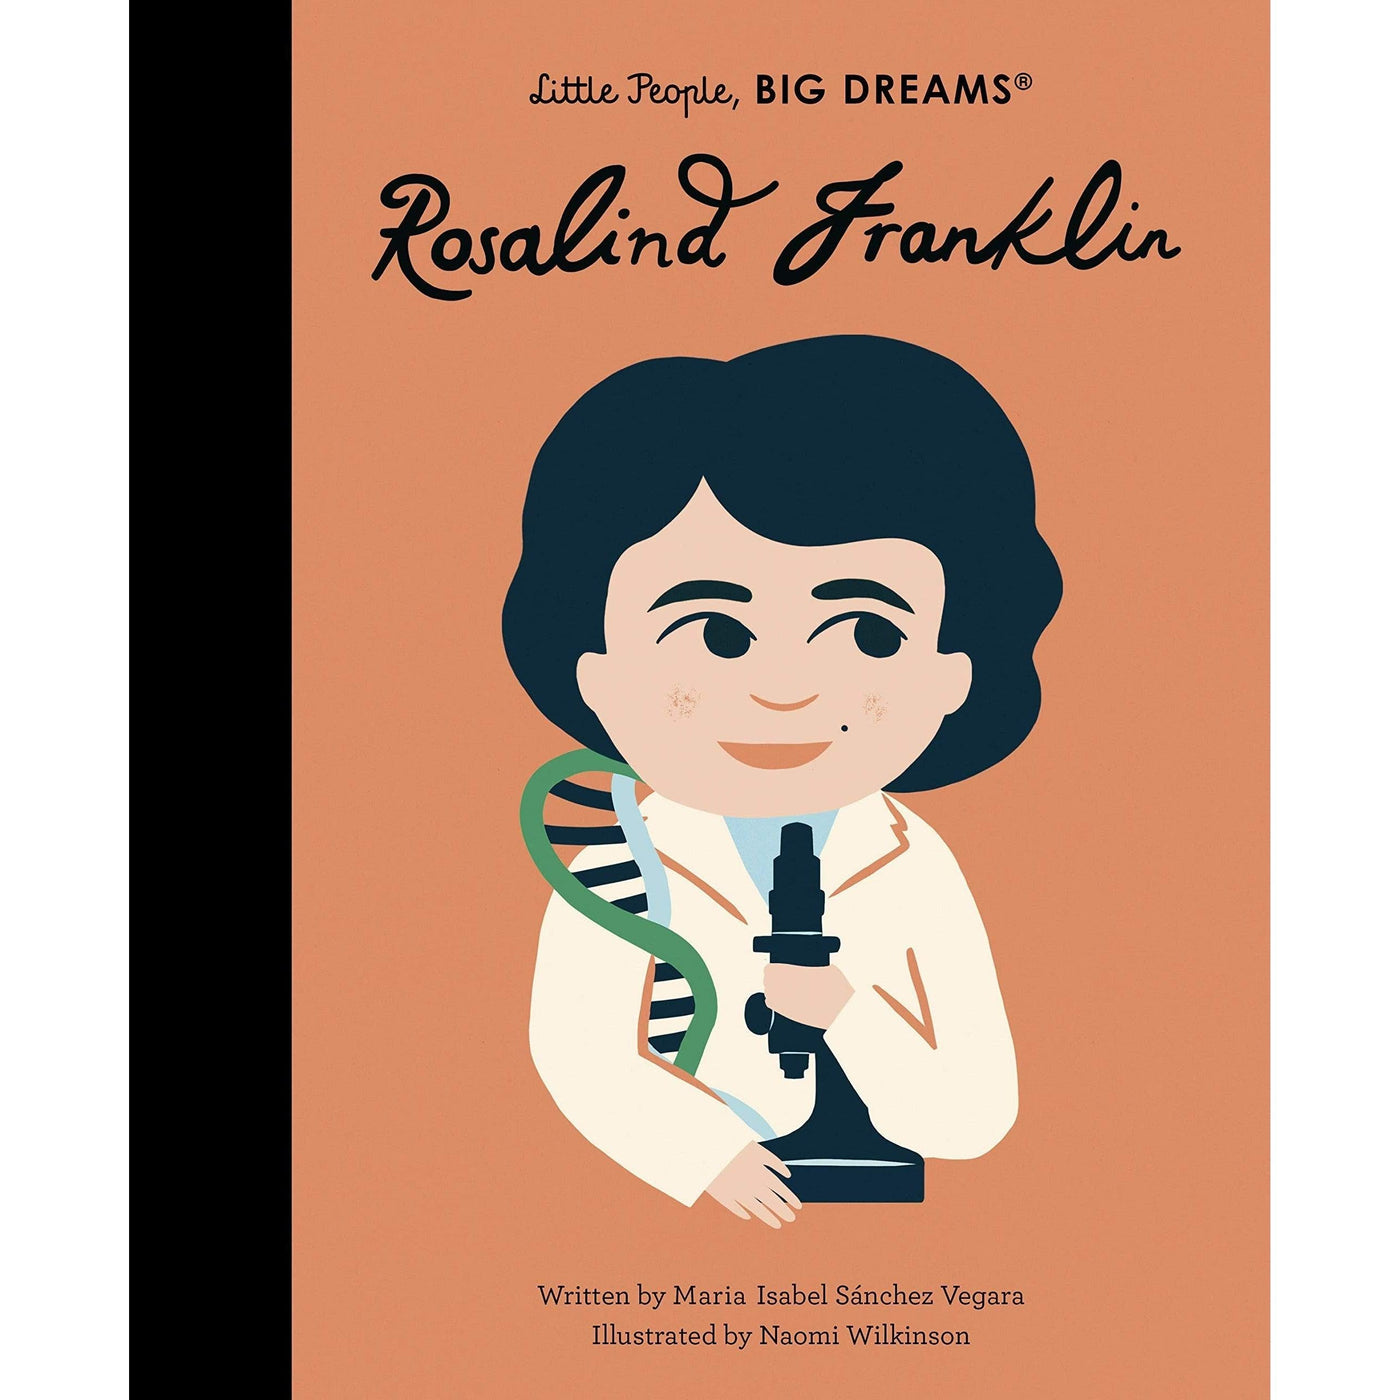 Rosalind Franklin: Volume 65